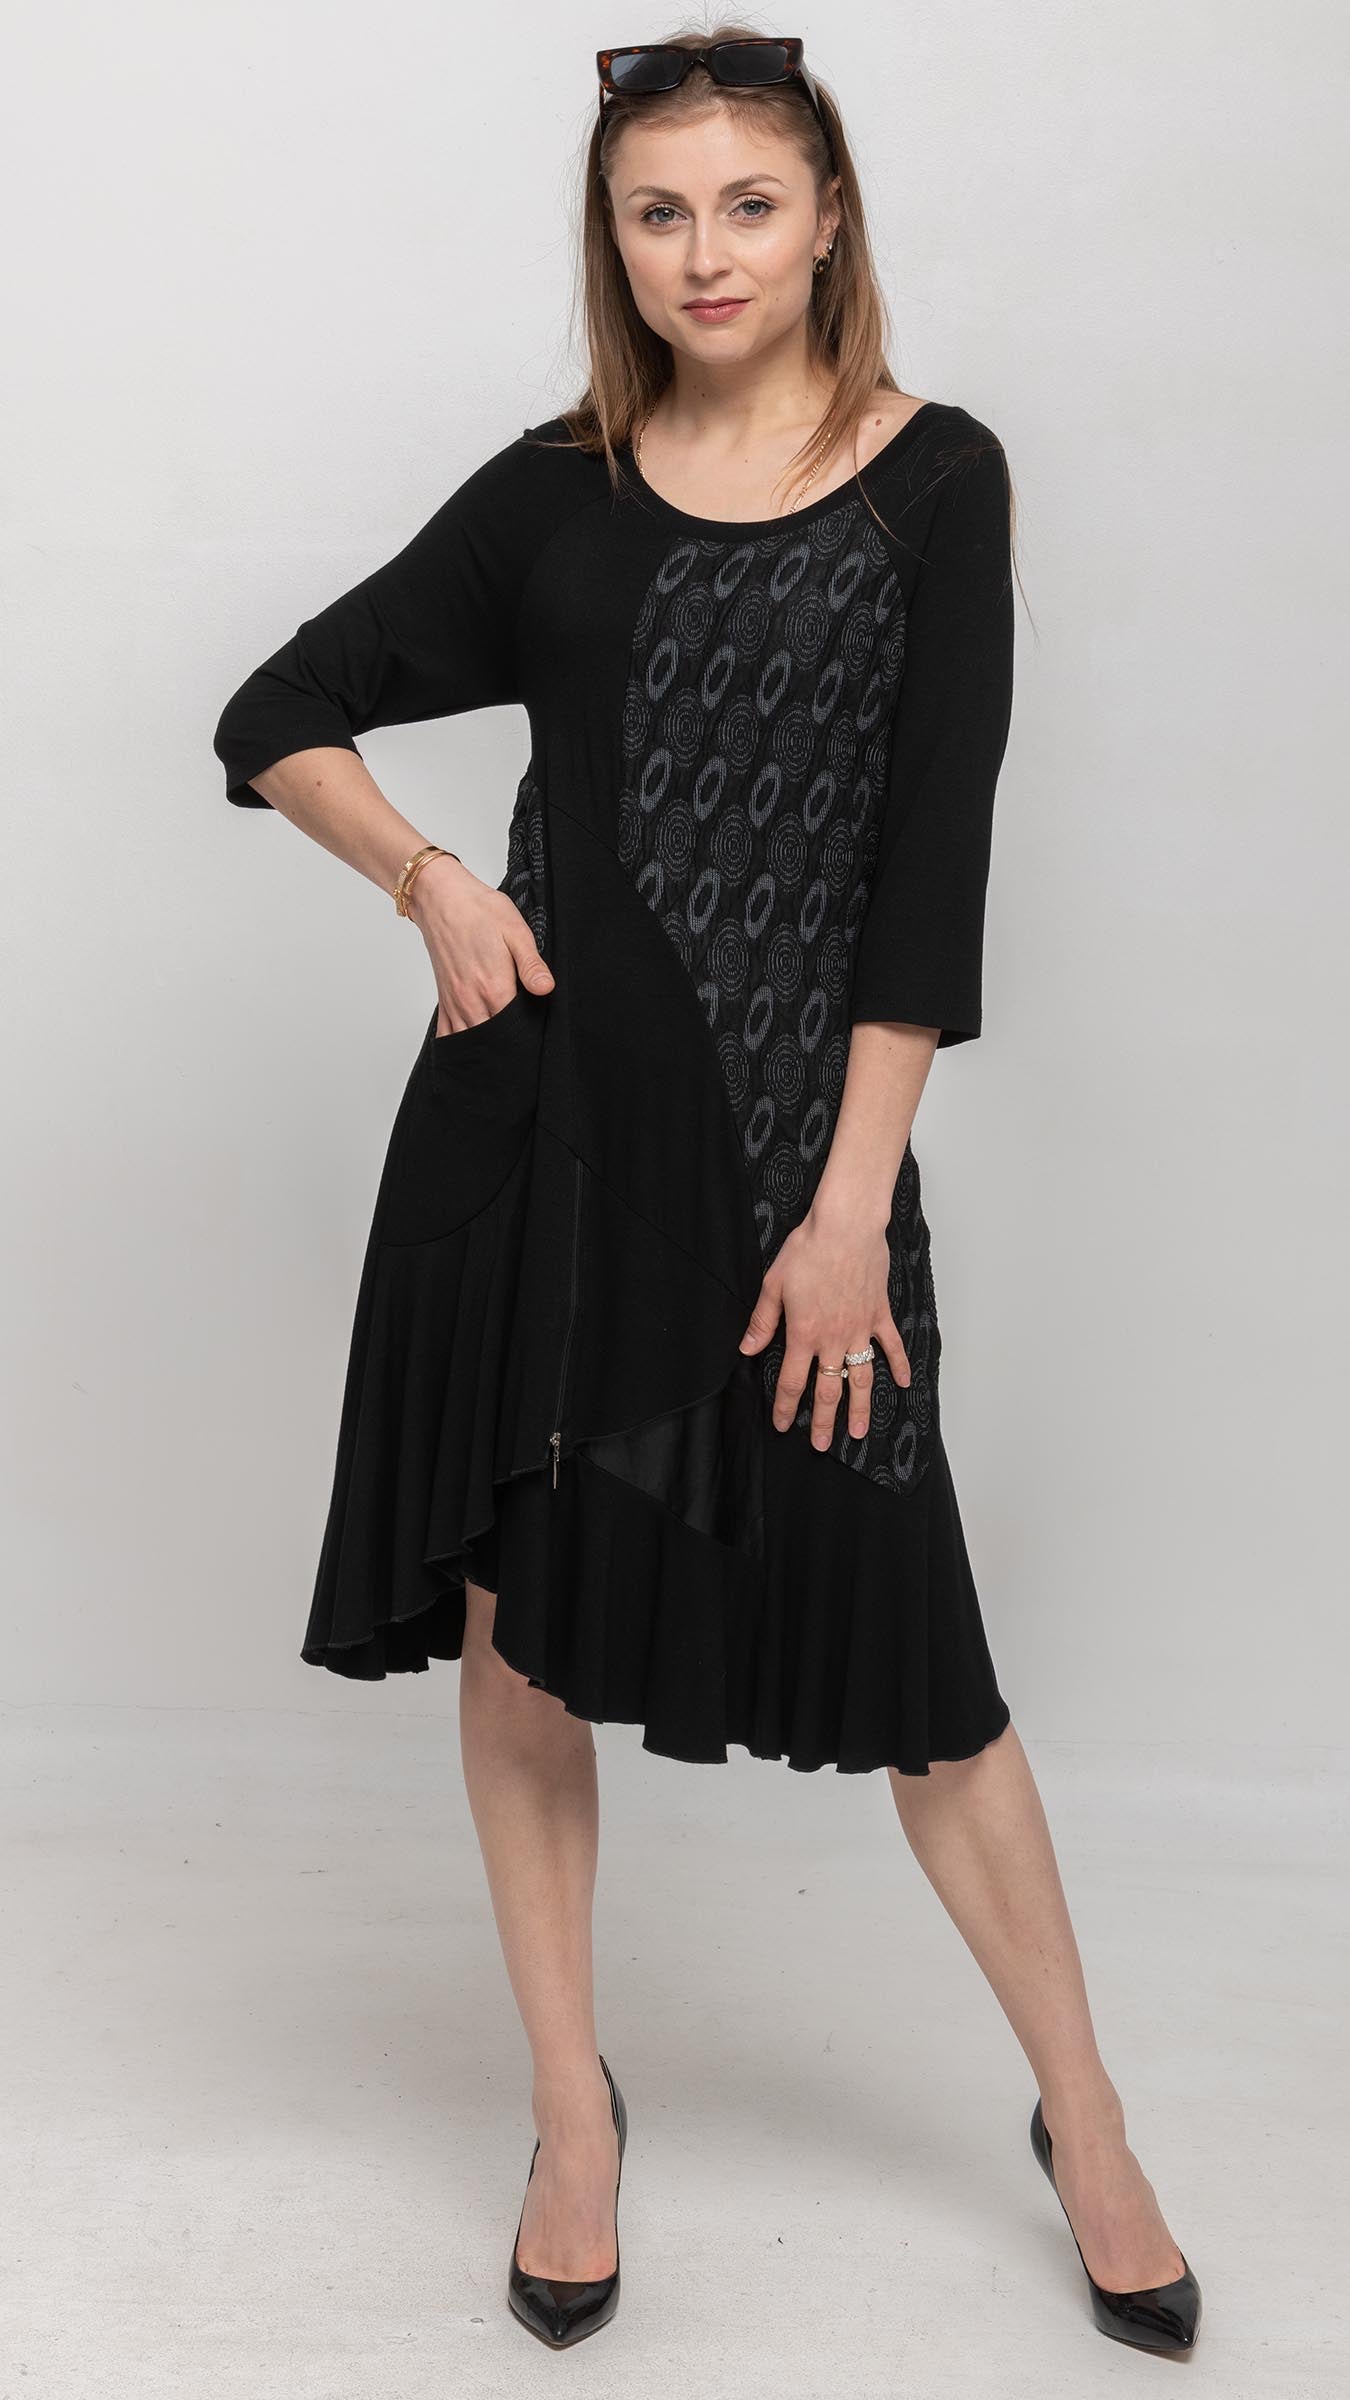 Buy Women's Short Black Flared Dresses Online